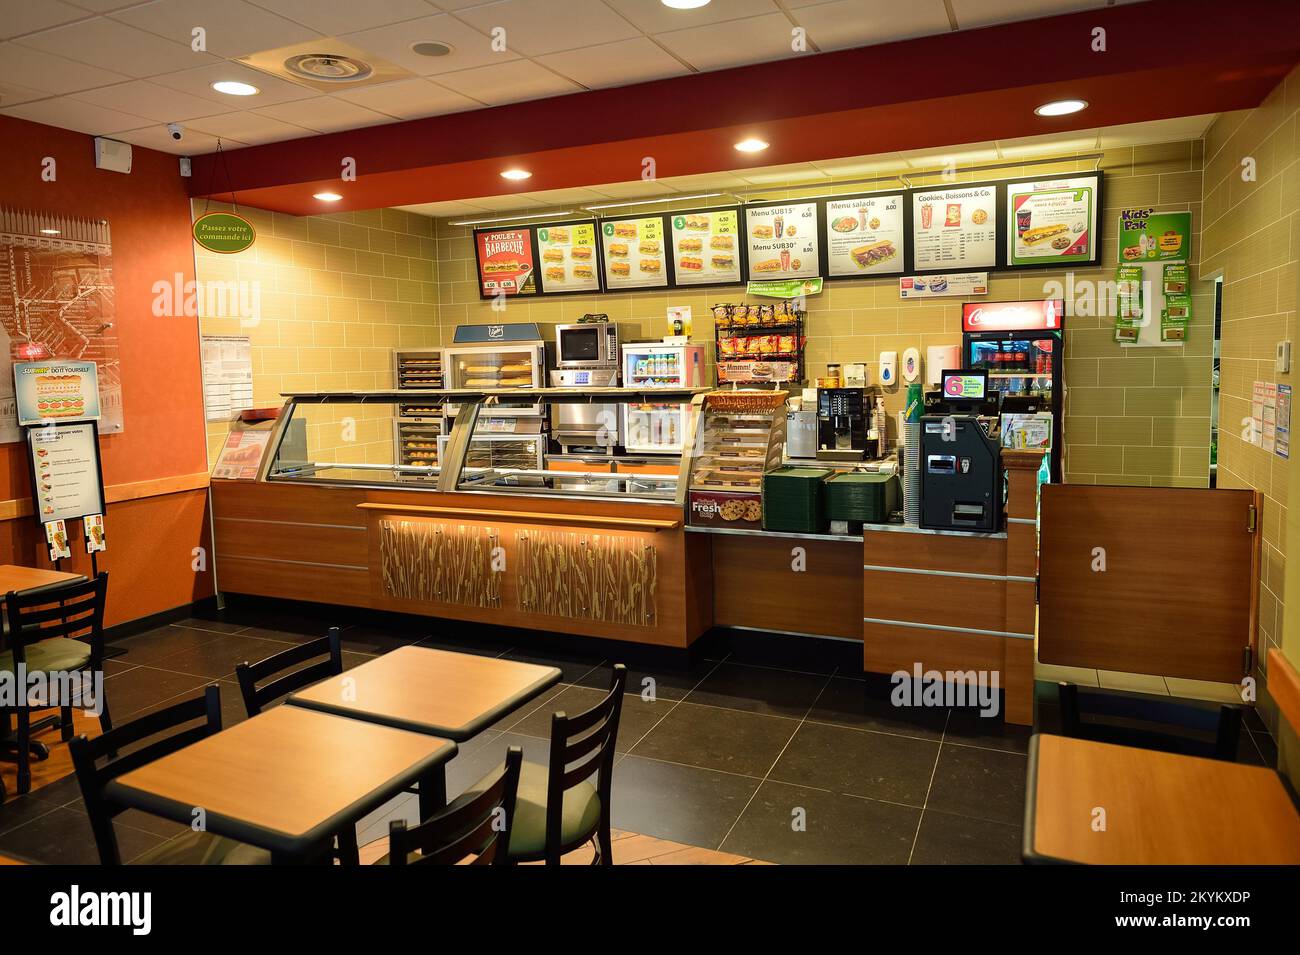 NIZA, FRANCIA - 15 DE AGOSTO de 2015: Subterráneo restaurante de comida rápida interior. Subway es una franquicia americana de restaurantes de comida rápida que vende principalmente submar Foto de stock